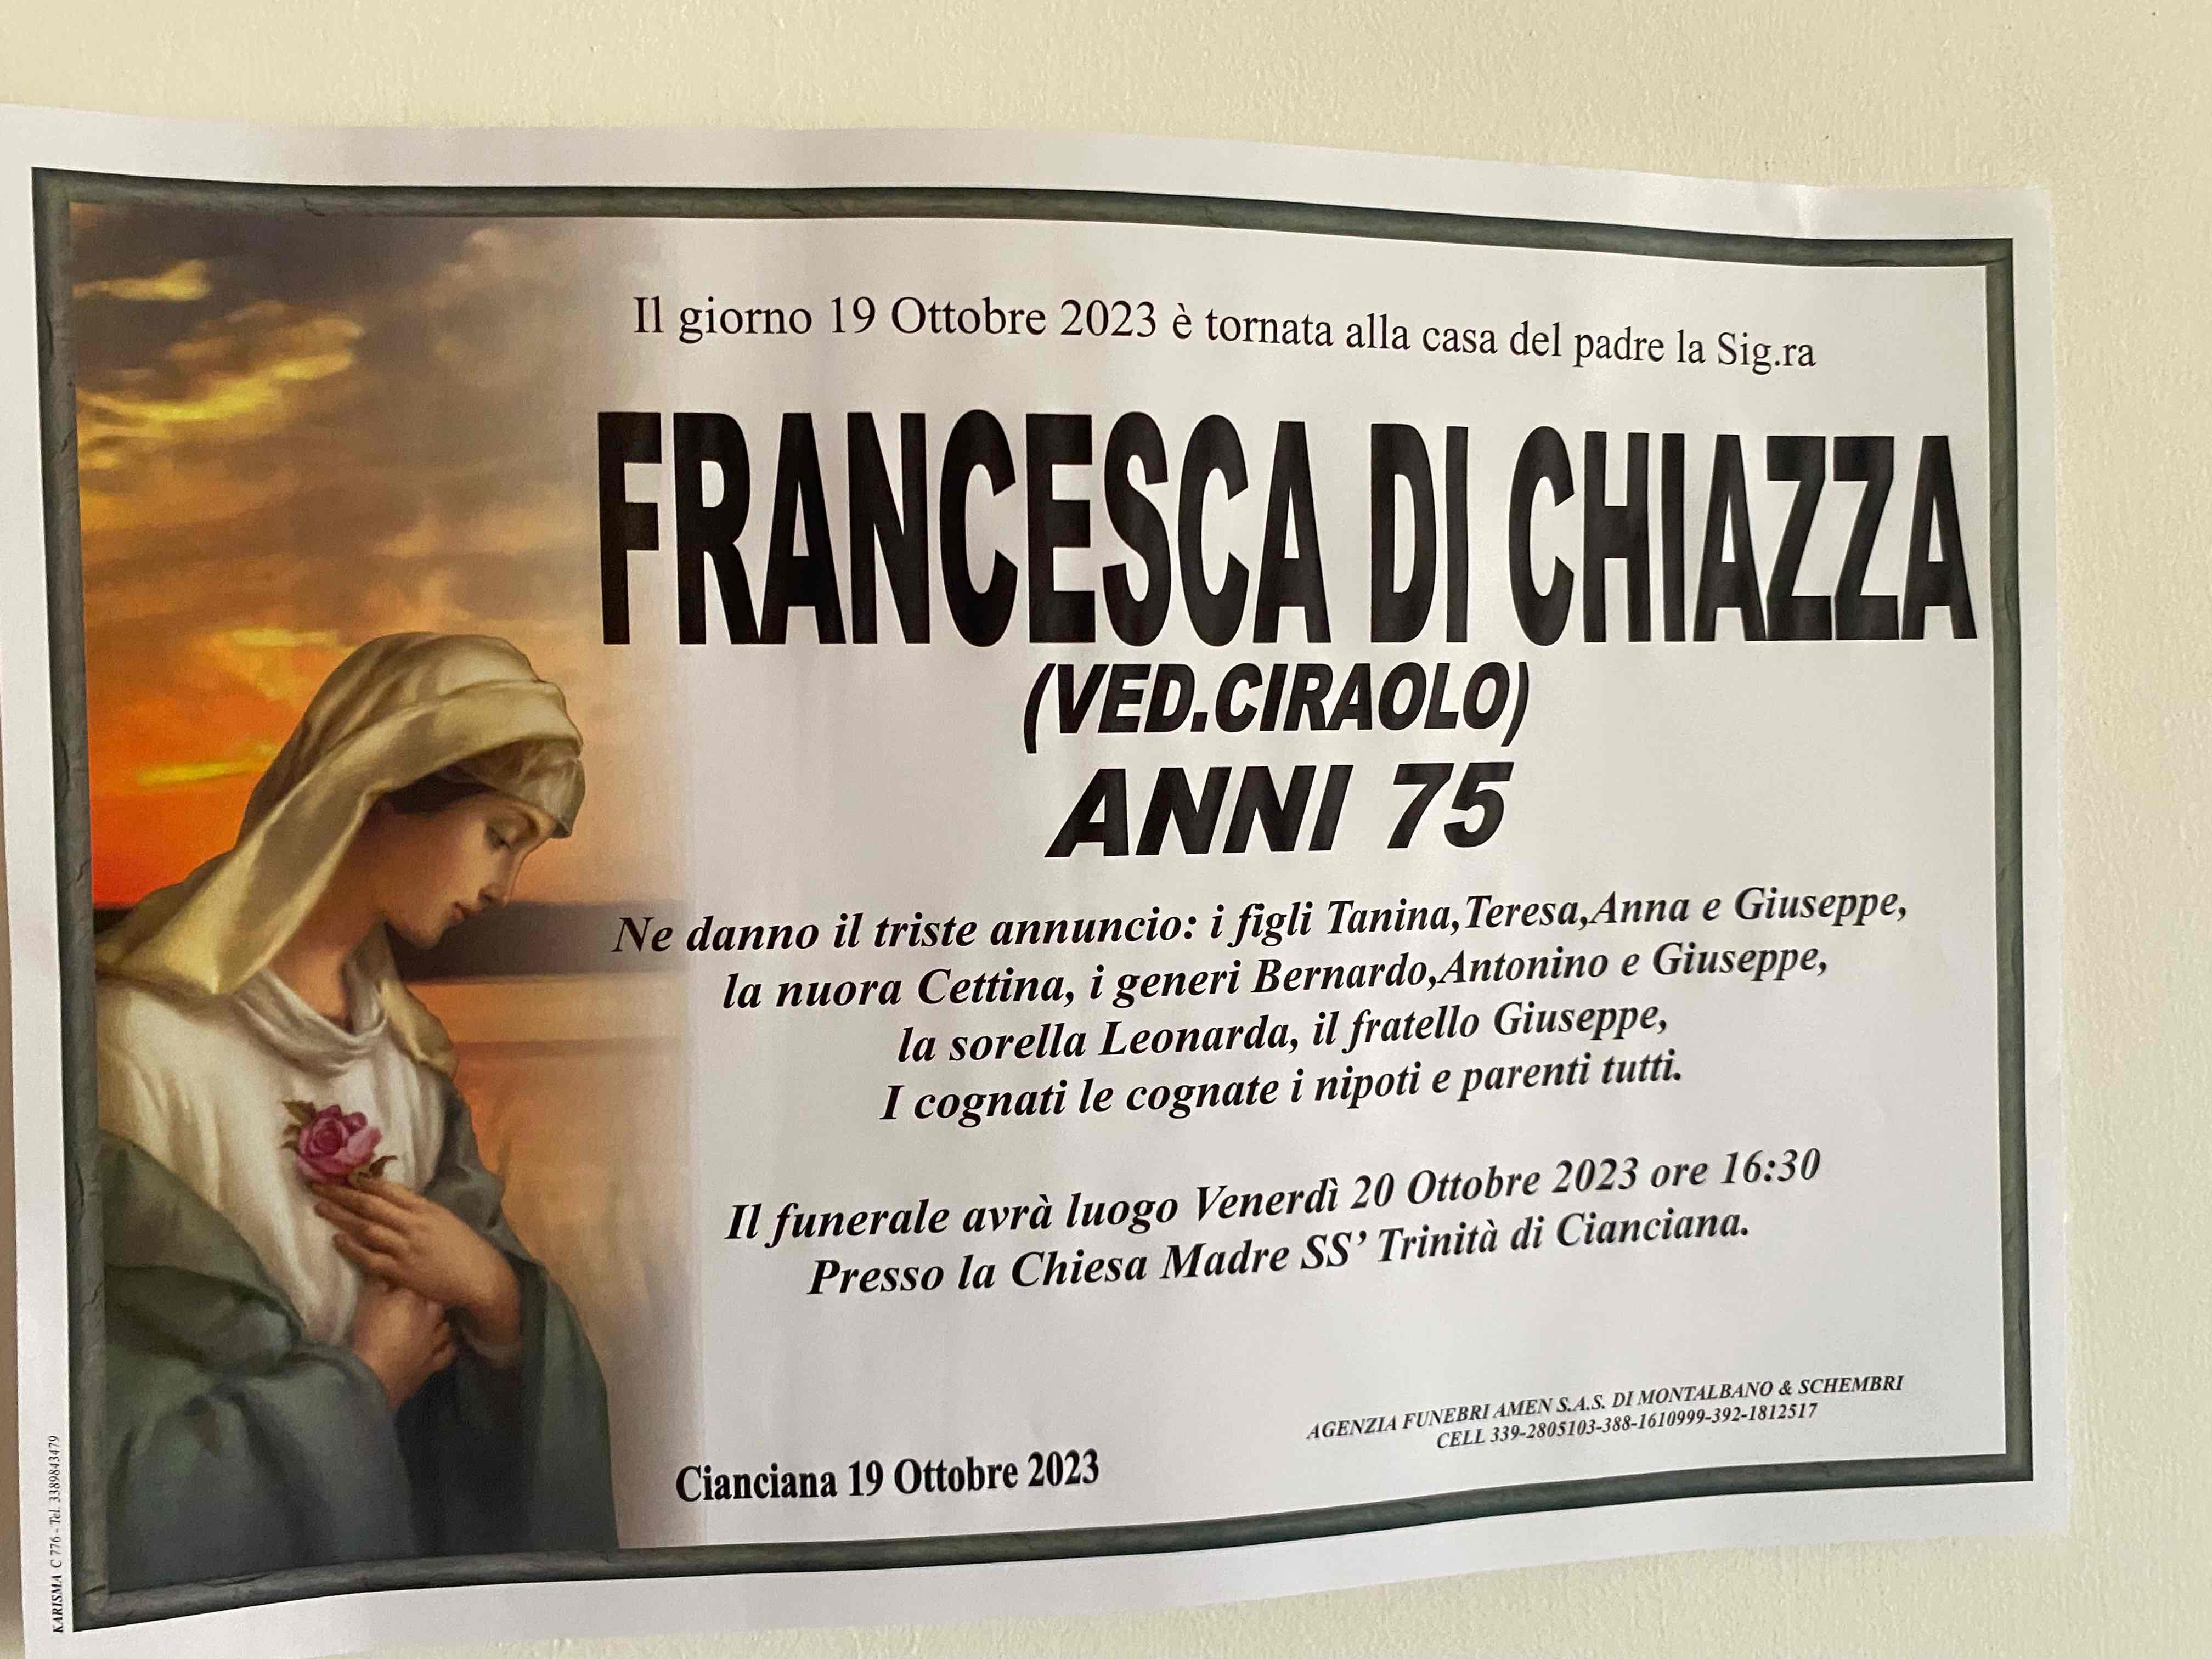 Francesca Di Chiazza